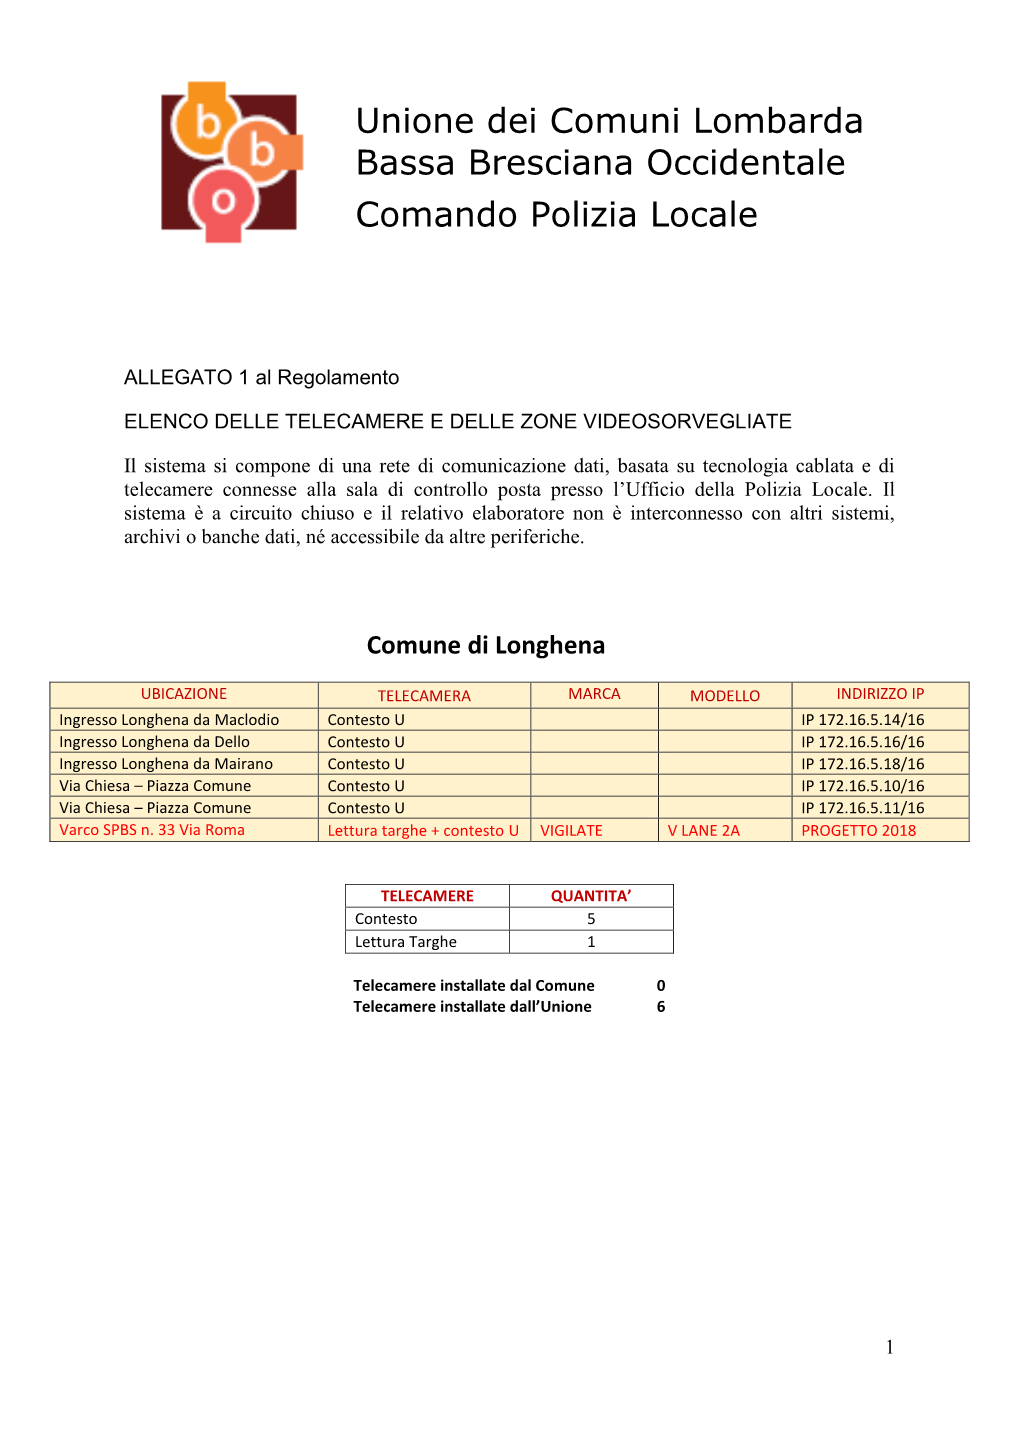 Unione Dei Comuni Lombarda Bassa Bresciana Occidentale Comando Polizia Locale